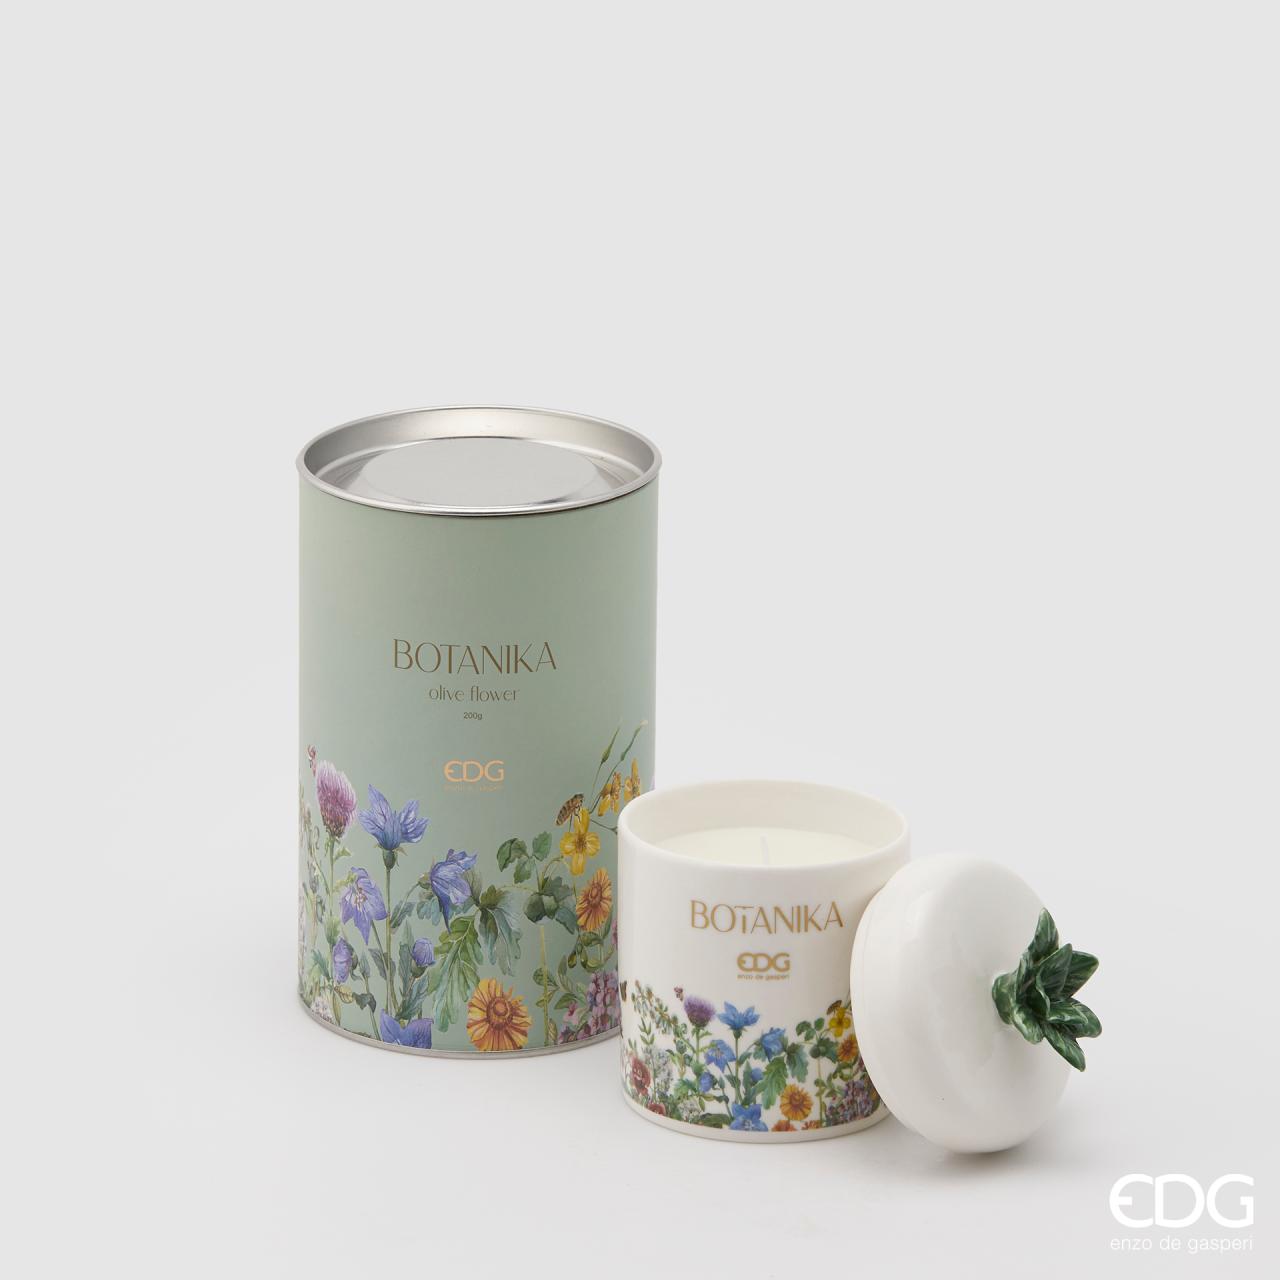 edg-enzo-de-gasperi-candela-in-ceramica-botanika-h-13-cm-olive-flower